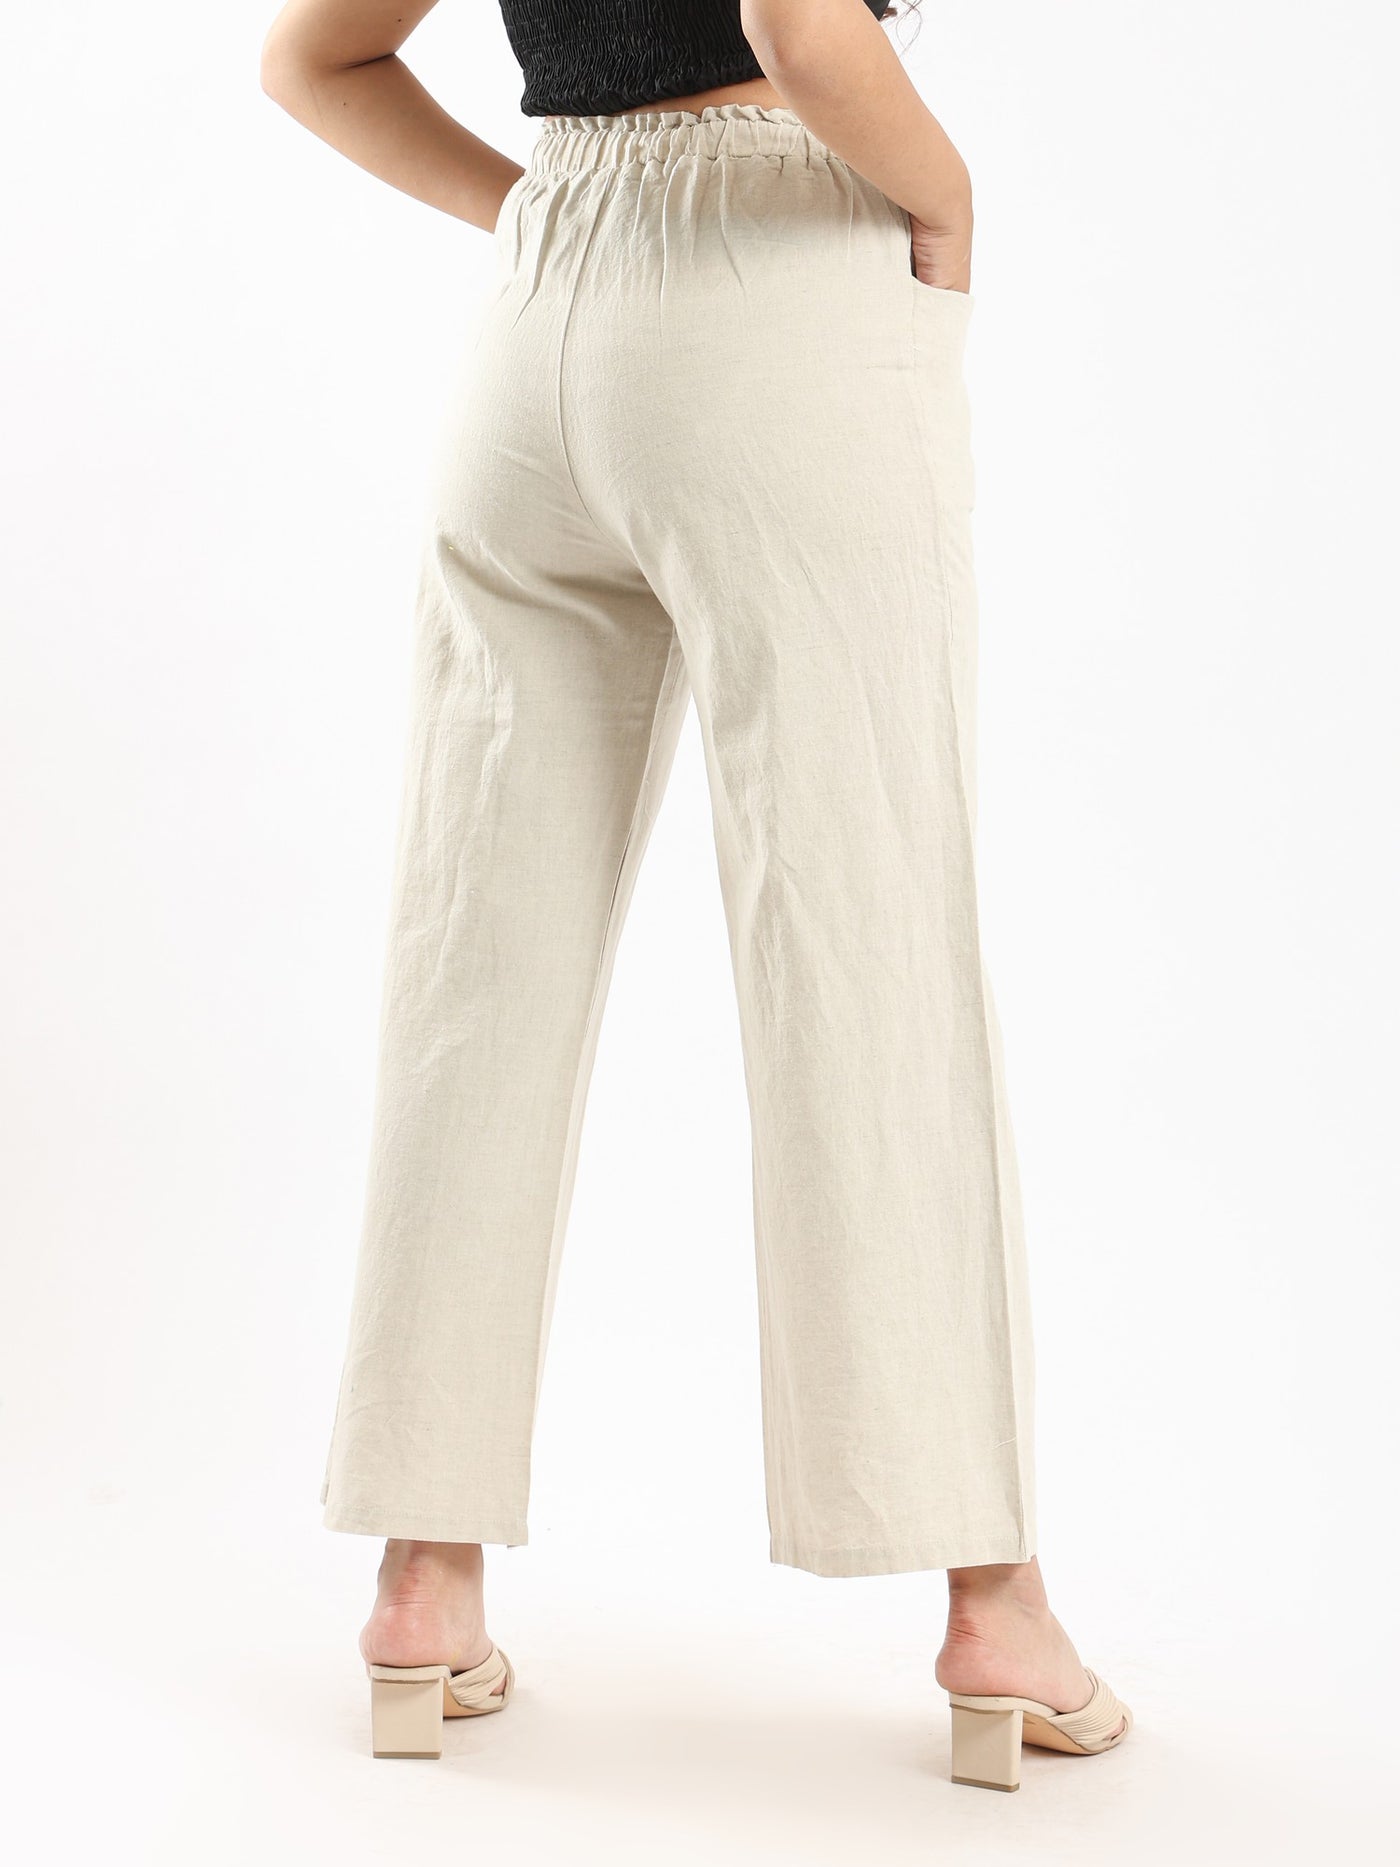 Pants - Drawstring - With Pockets